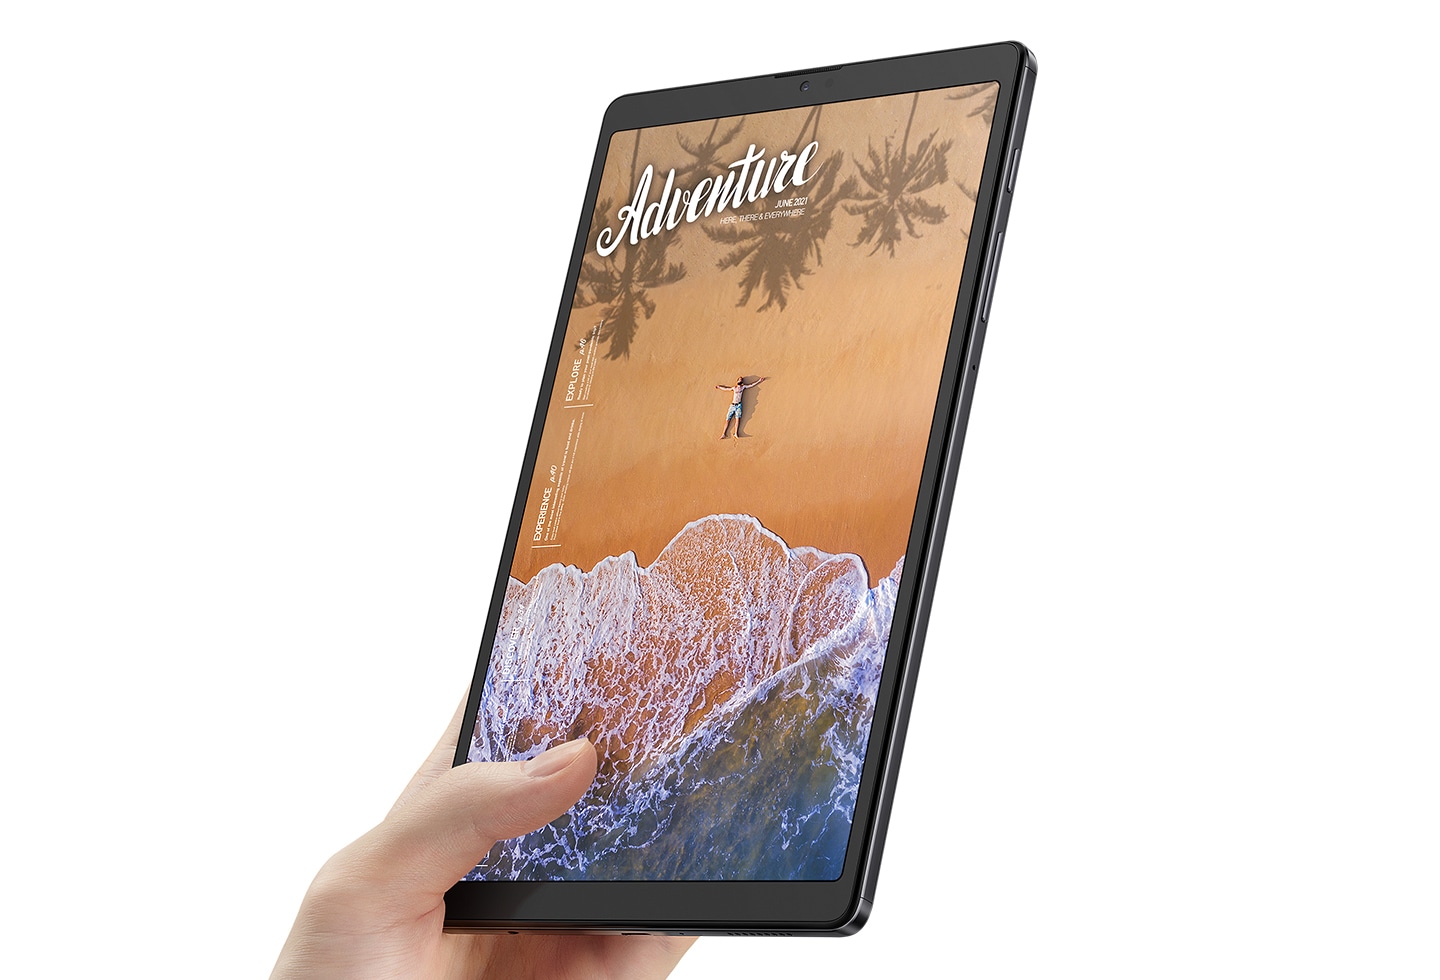 單手拿著 Galaxy Tab A7 Lite，螢幕顯示沙灘鳥瞰場景，及 Adventure 文字。